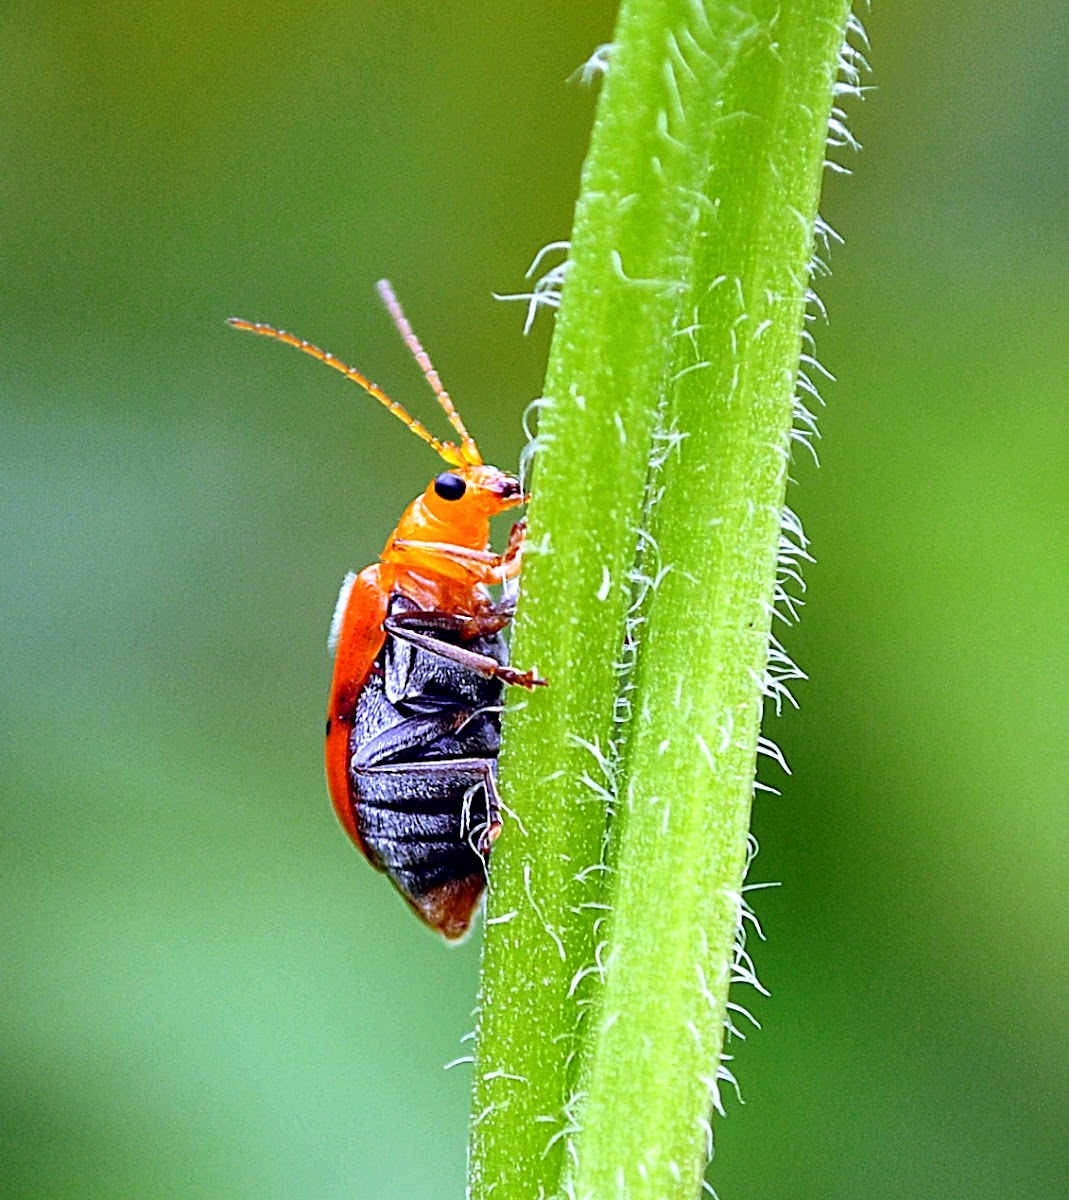 Leaf beetle.